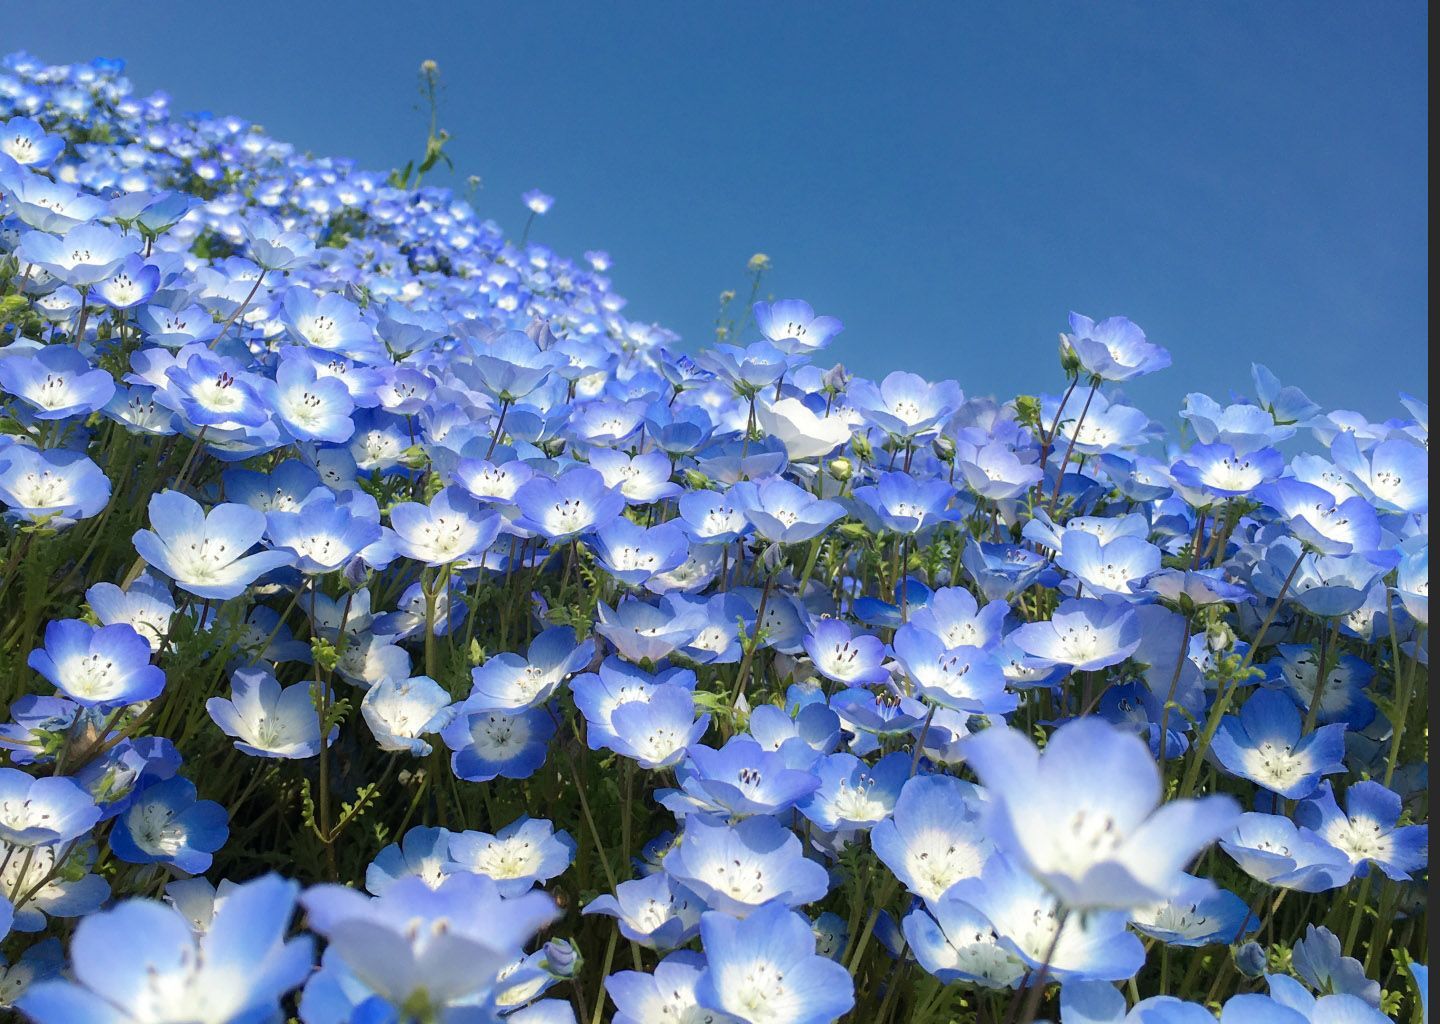 アルビオン Albion 公式 A Twitter おはようございます 今日の誕生花は ネモフィラ 花言葉は 可憐 です 小ぶりでまるい花姿からきているそう 一面に咲き誇る鮮やかなブルーは見事ですね 誕生花 花言葉 T Co Prlun93yk4 Twitter